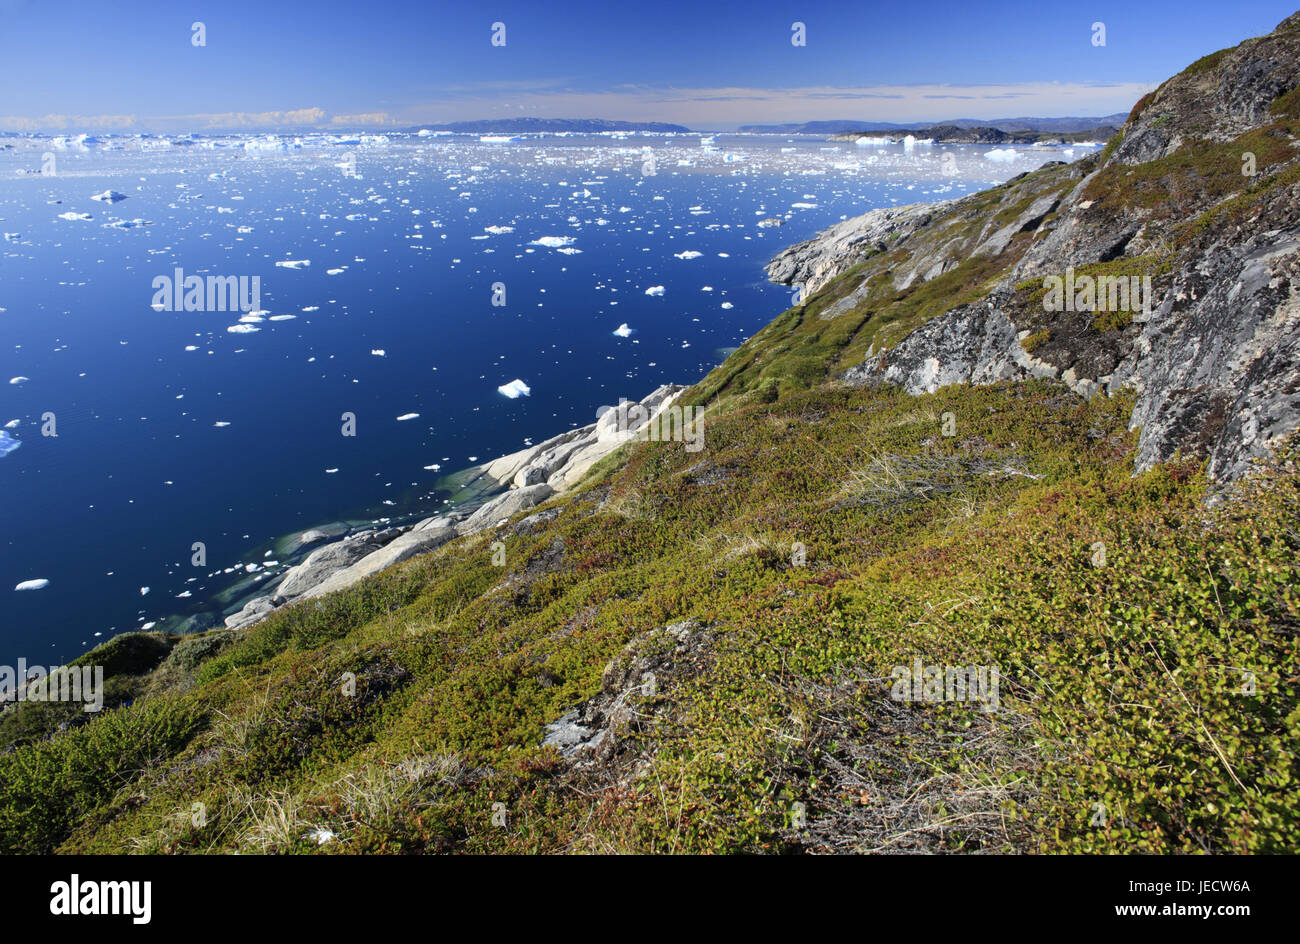 La Groenlandia, Discoteca Bay, Ilulissat, Fjord, drift ghiaccio, paesaggi costieri, dettaglio, vista la Groenlandia occidentale, ghiaccio, ghiacciaio, l'Artico, estate, solitudine, deserte, ghiacciaio, floes, iceberg, natura, cambiamenti climatici, mirroring, superficie di acqua, bile costa, coperte, vegetazione, piante, Foto Stock